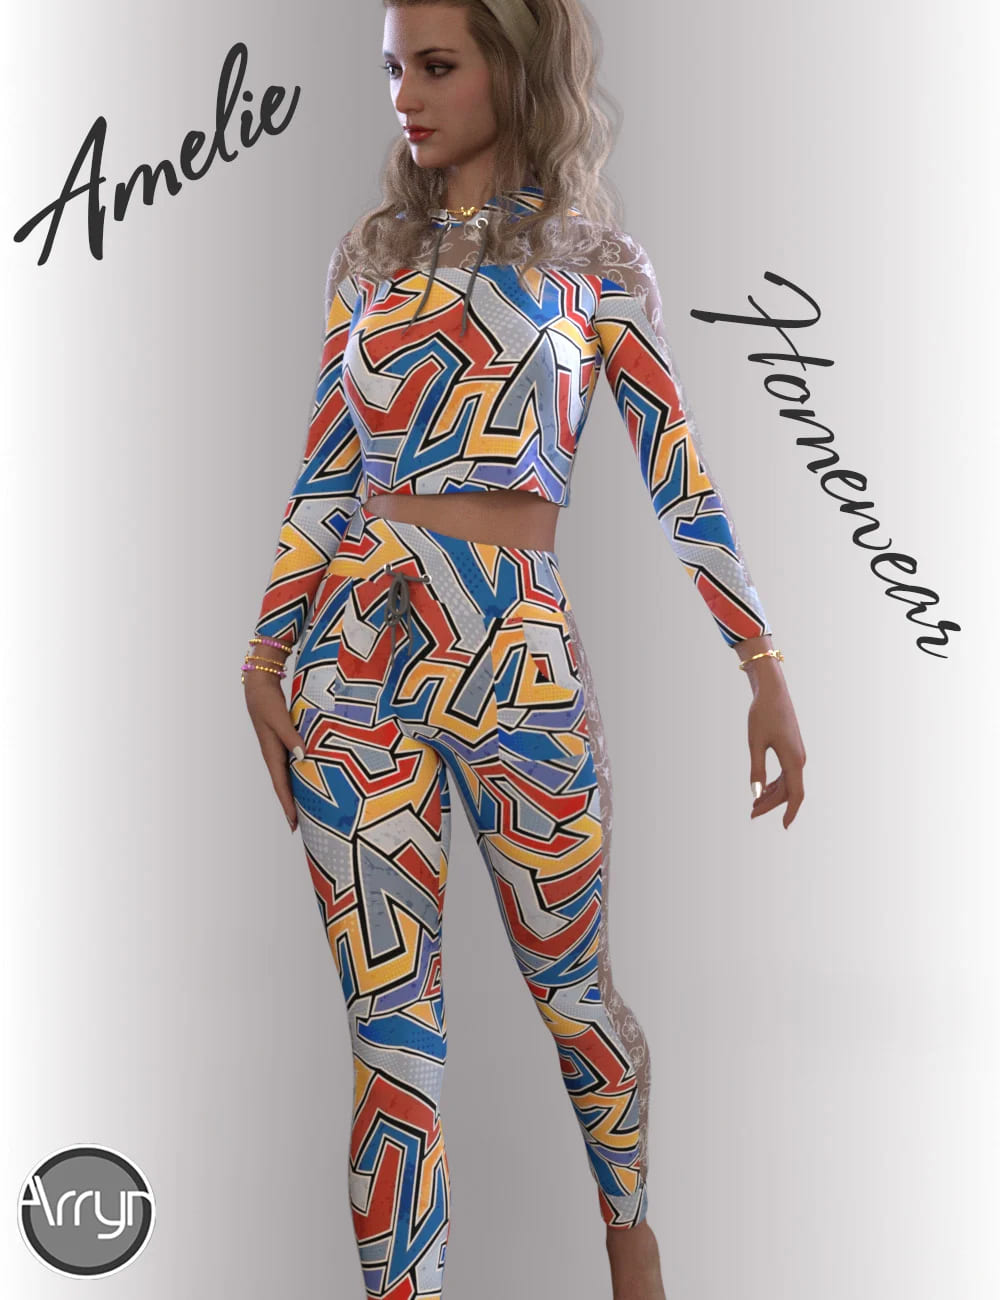 dForce Amelie Homewear for Genesis 8.1 Females_DAZ3D下载站